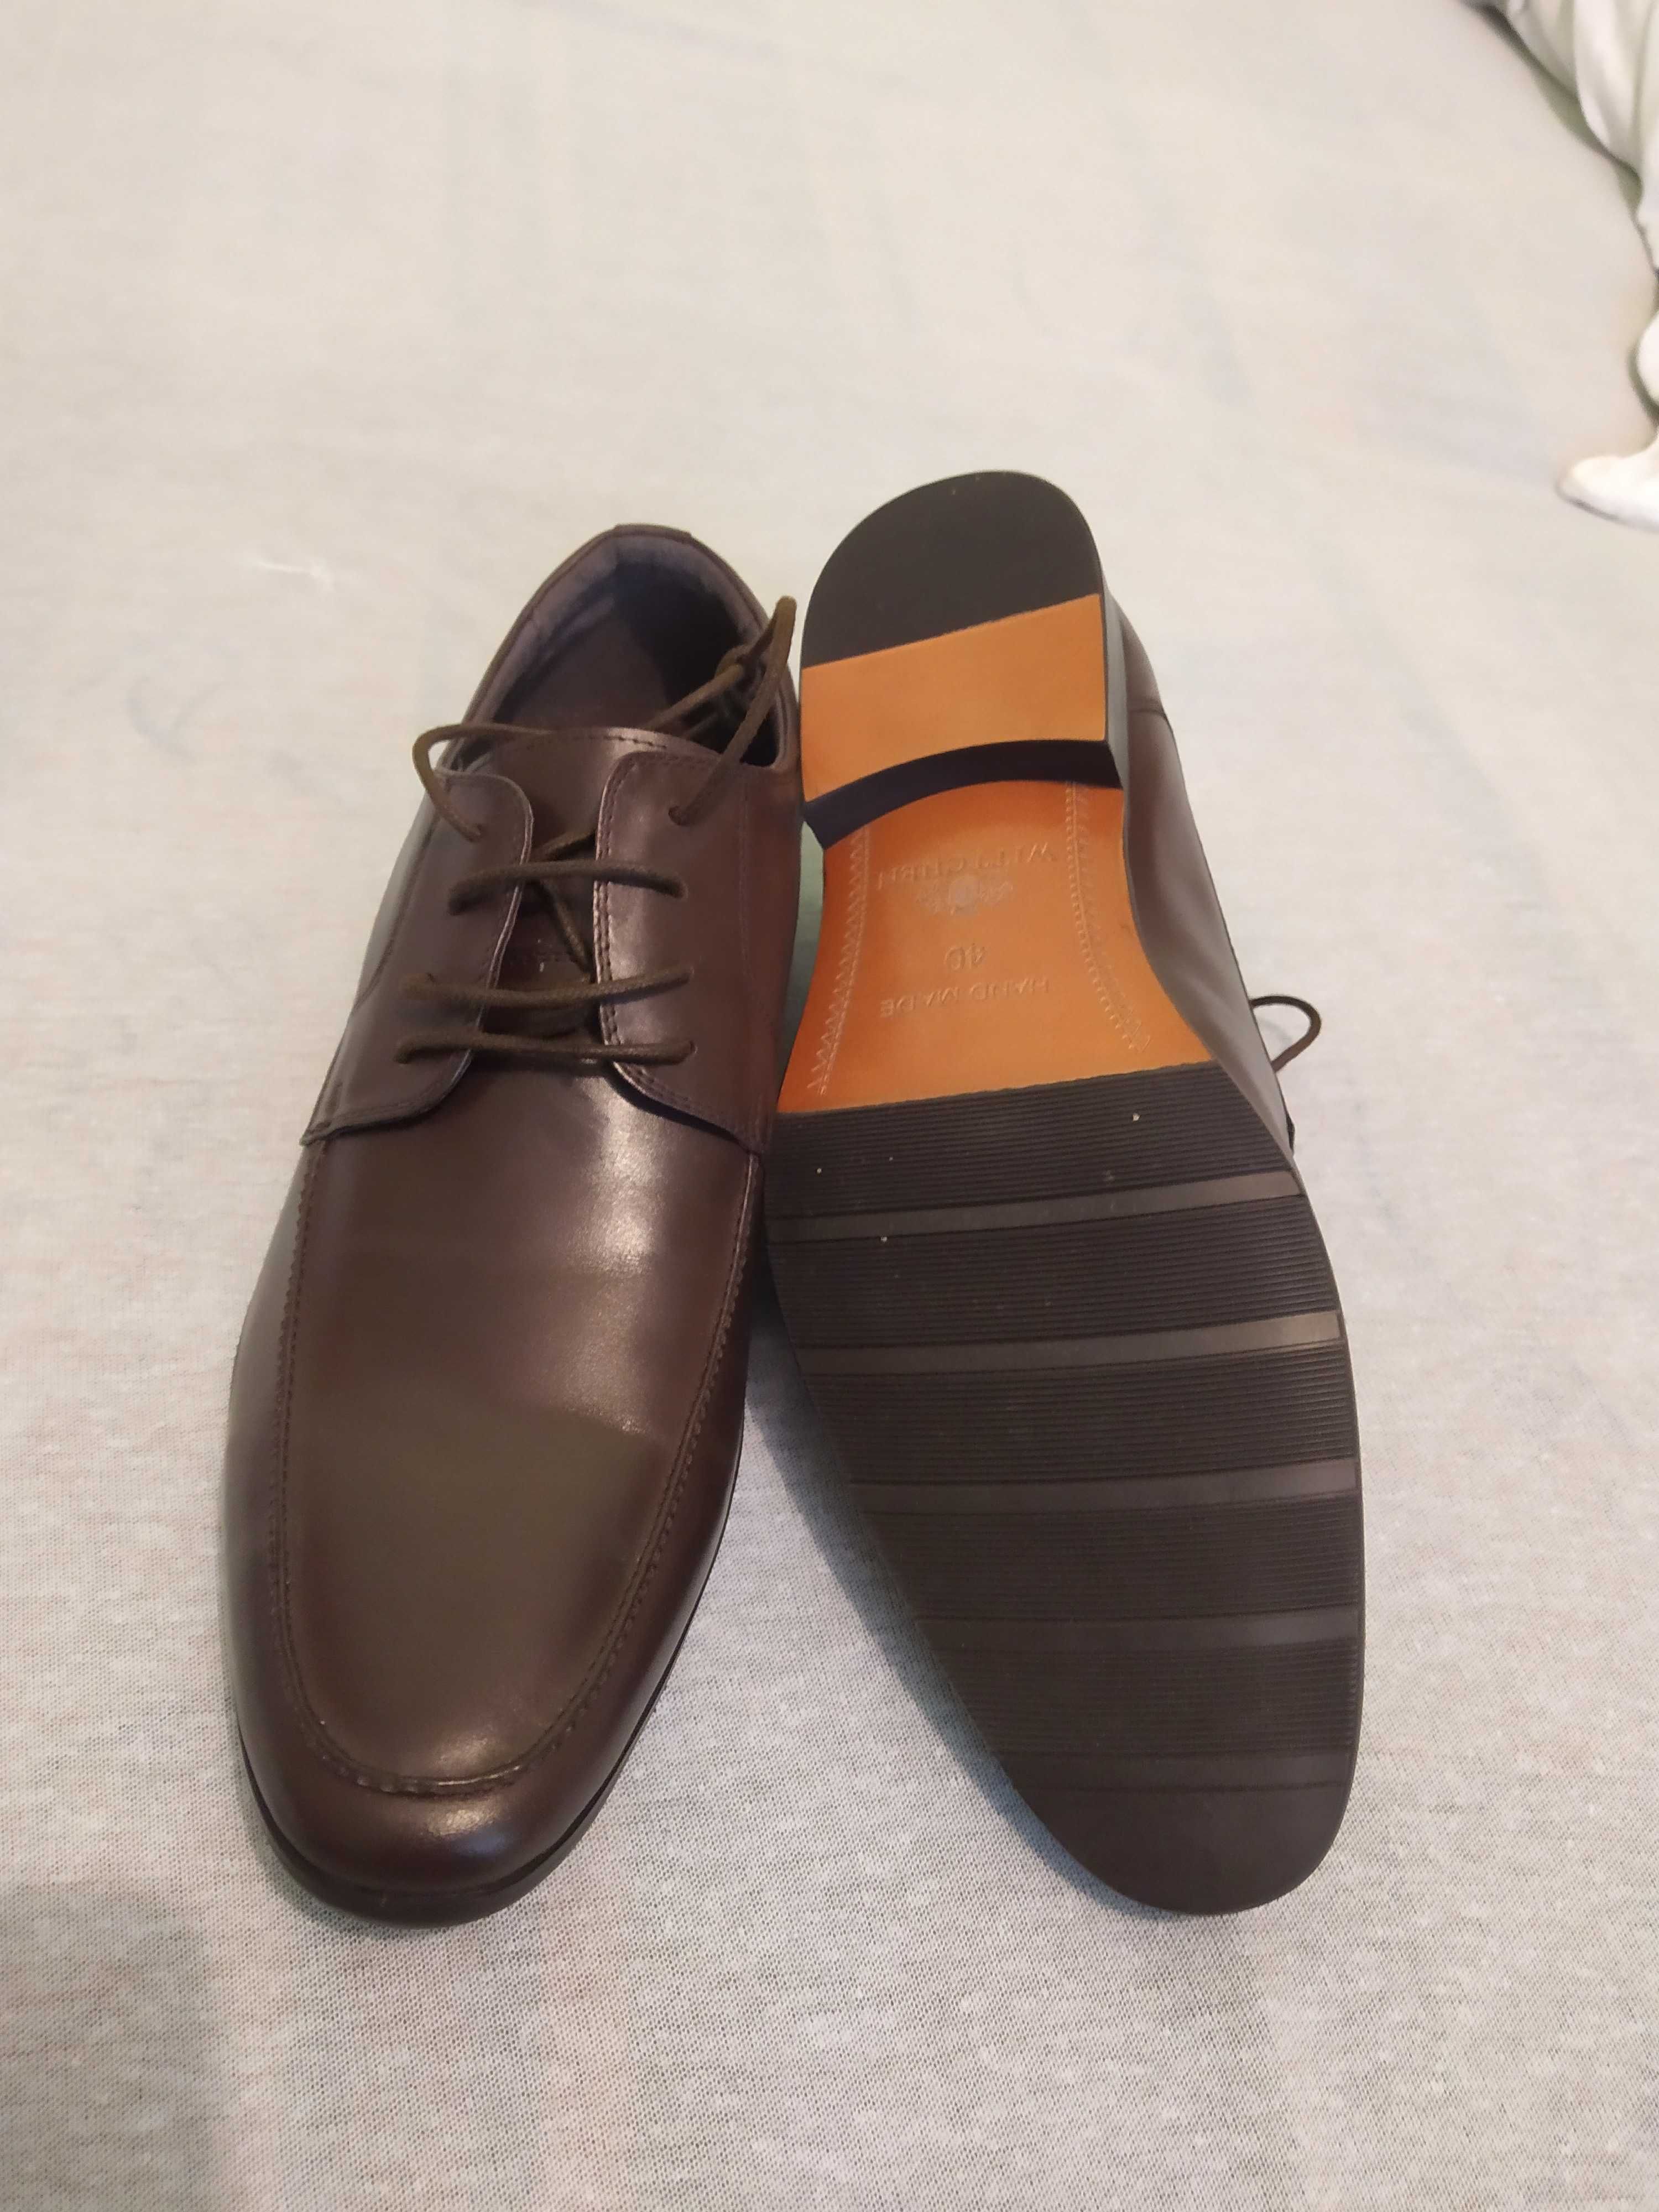 Nowe pantofle WITTCHEN buty męskie / dziecięce r.40  eleganckie wesele